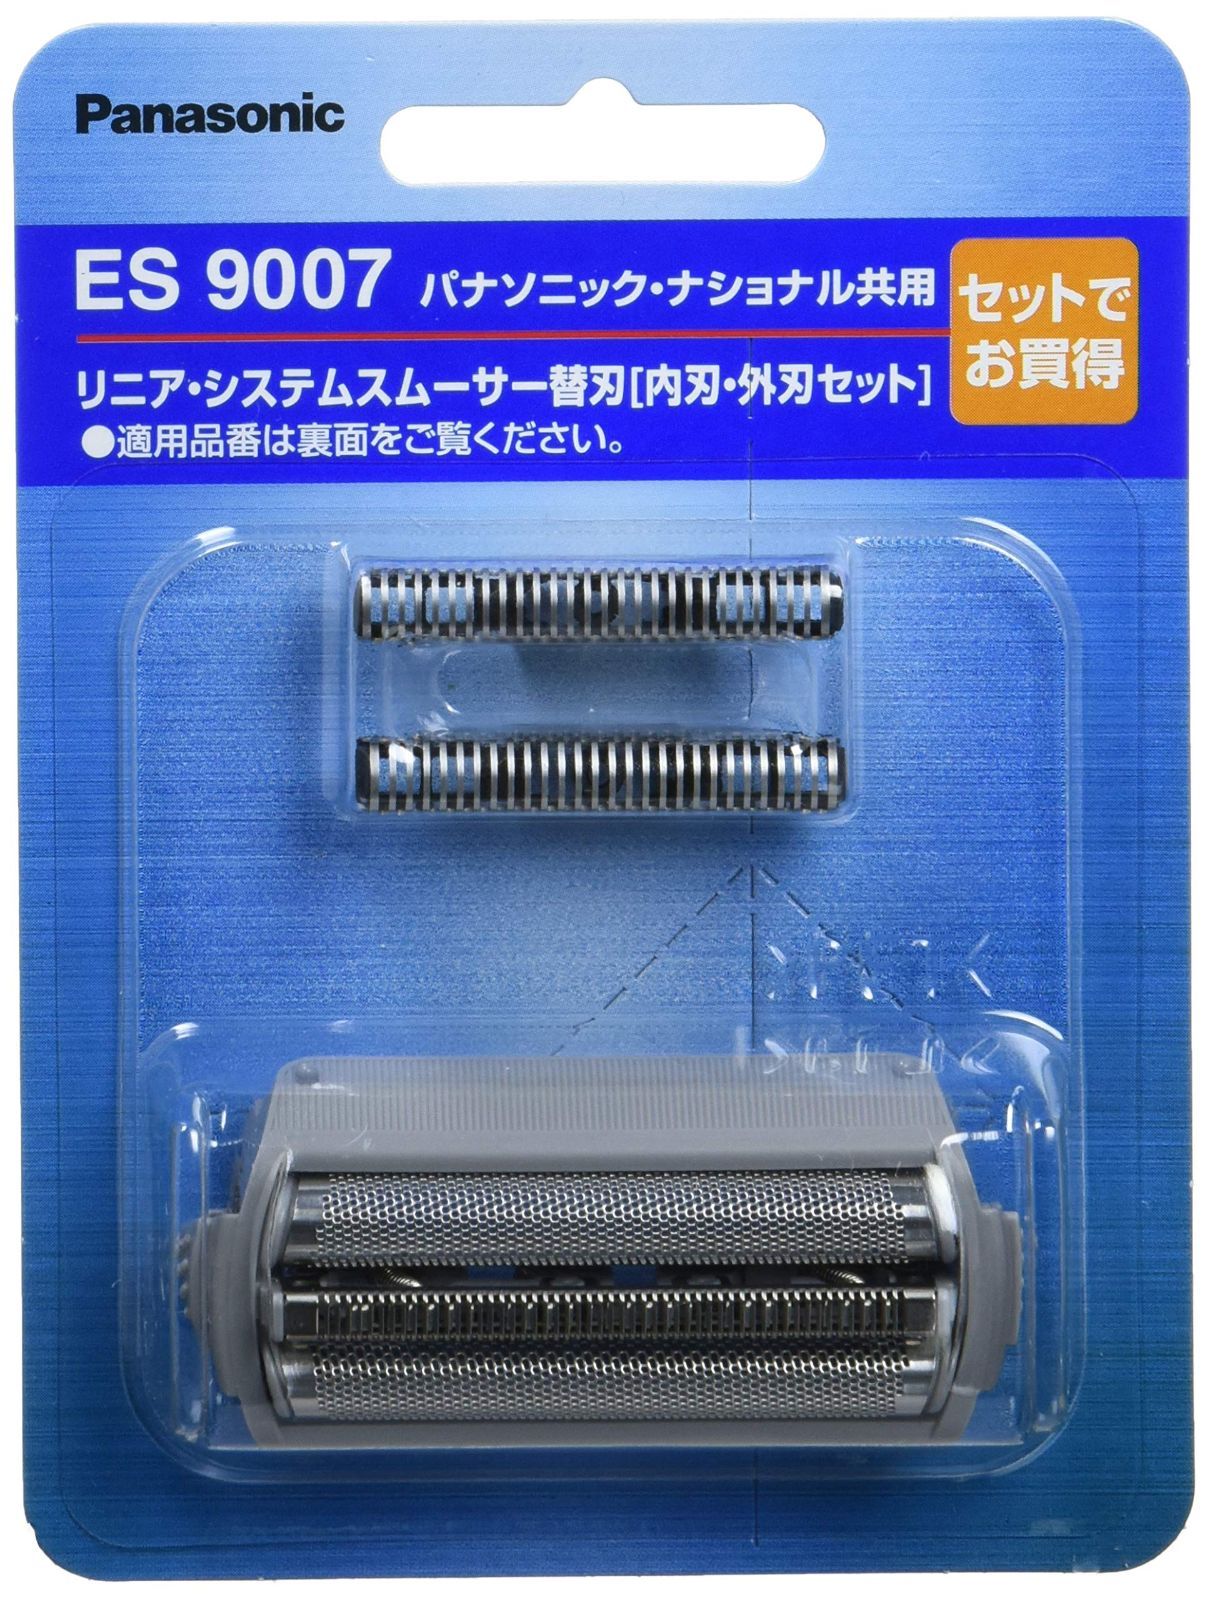 ナショナル 電気シェーバー ES5405